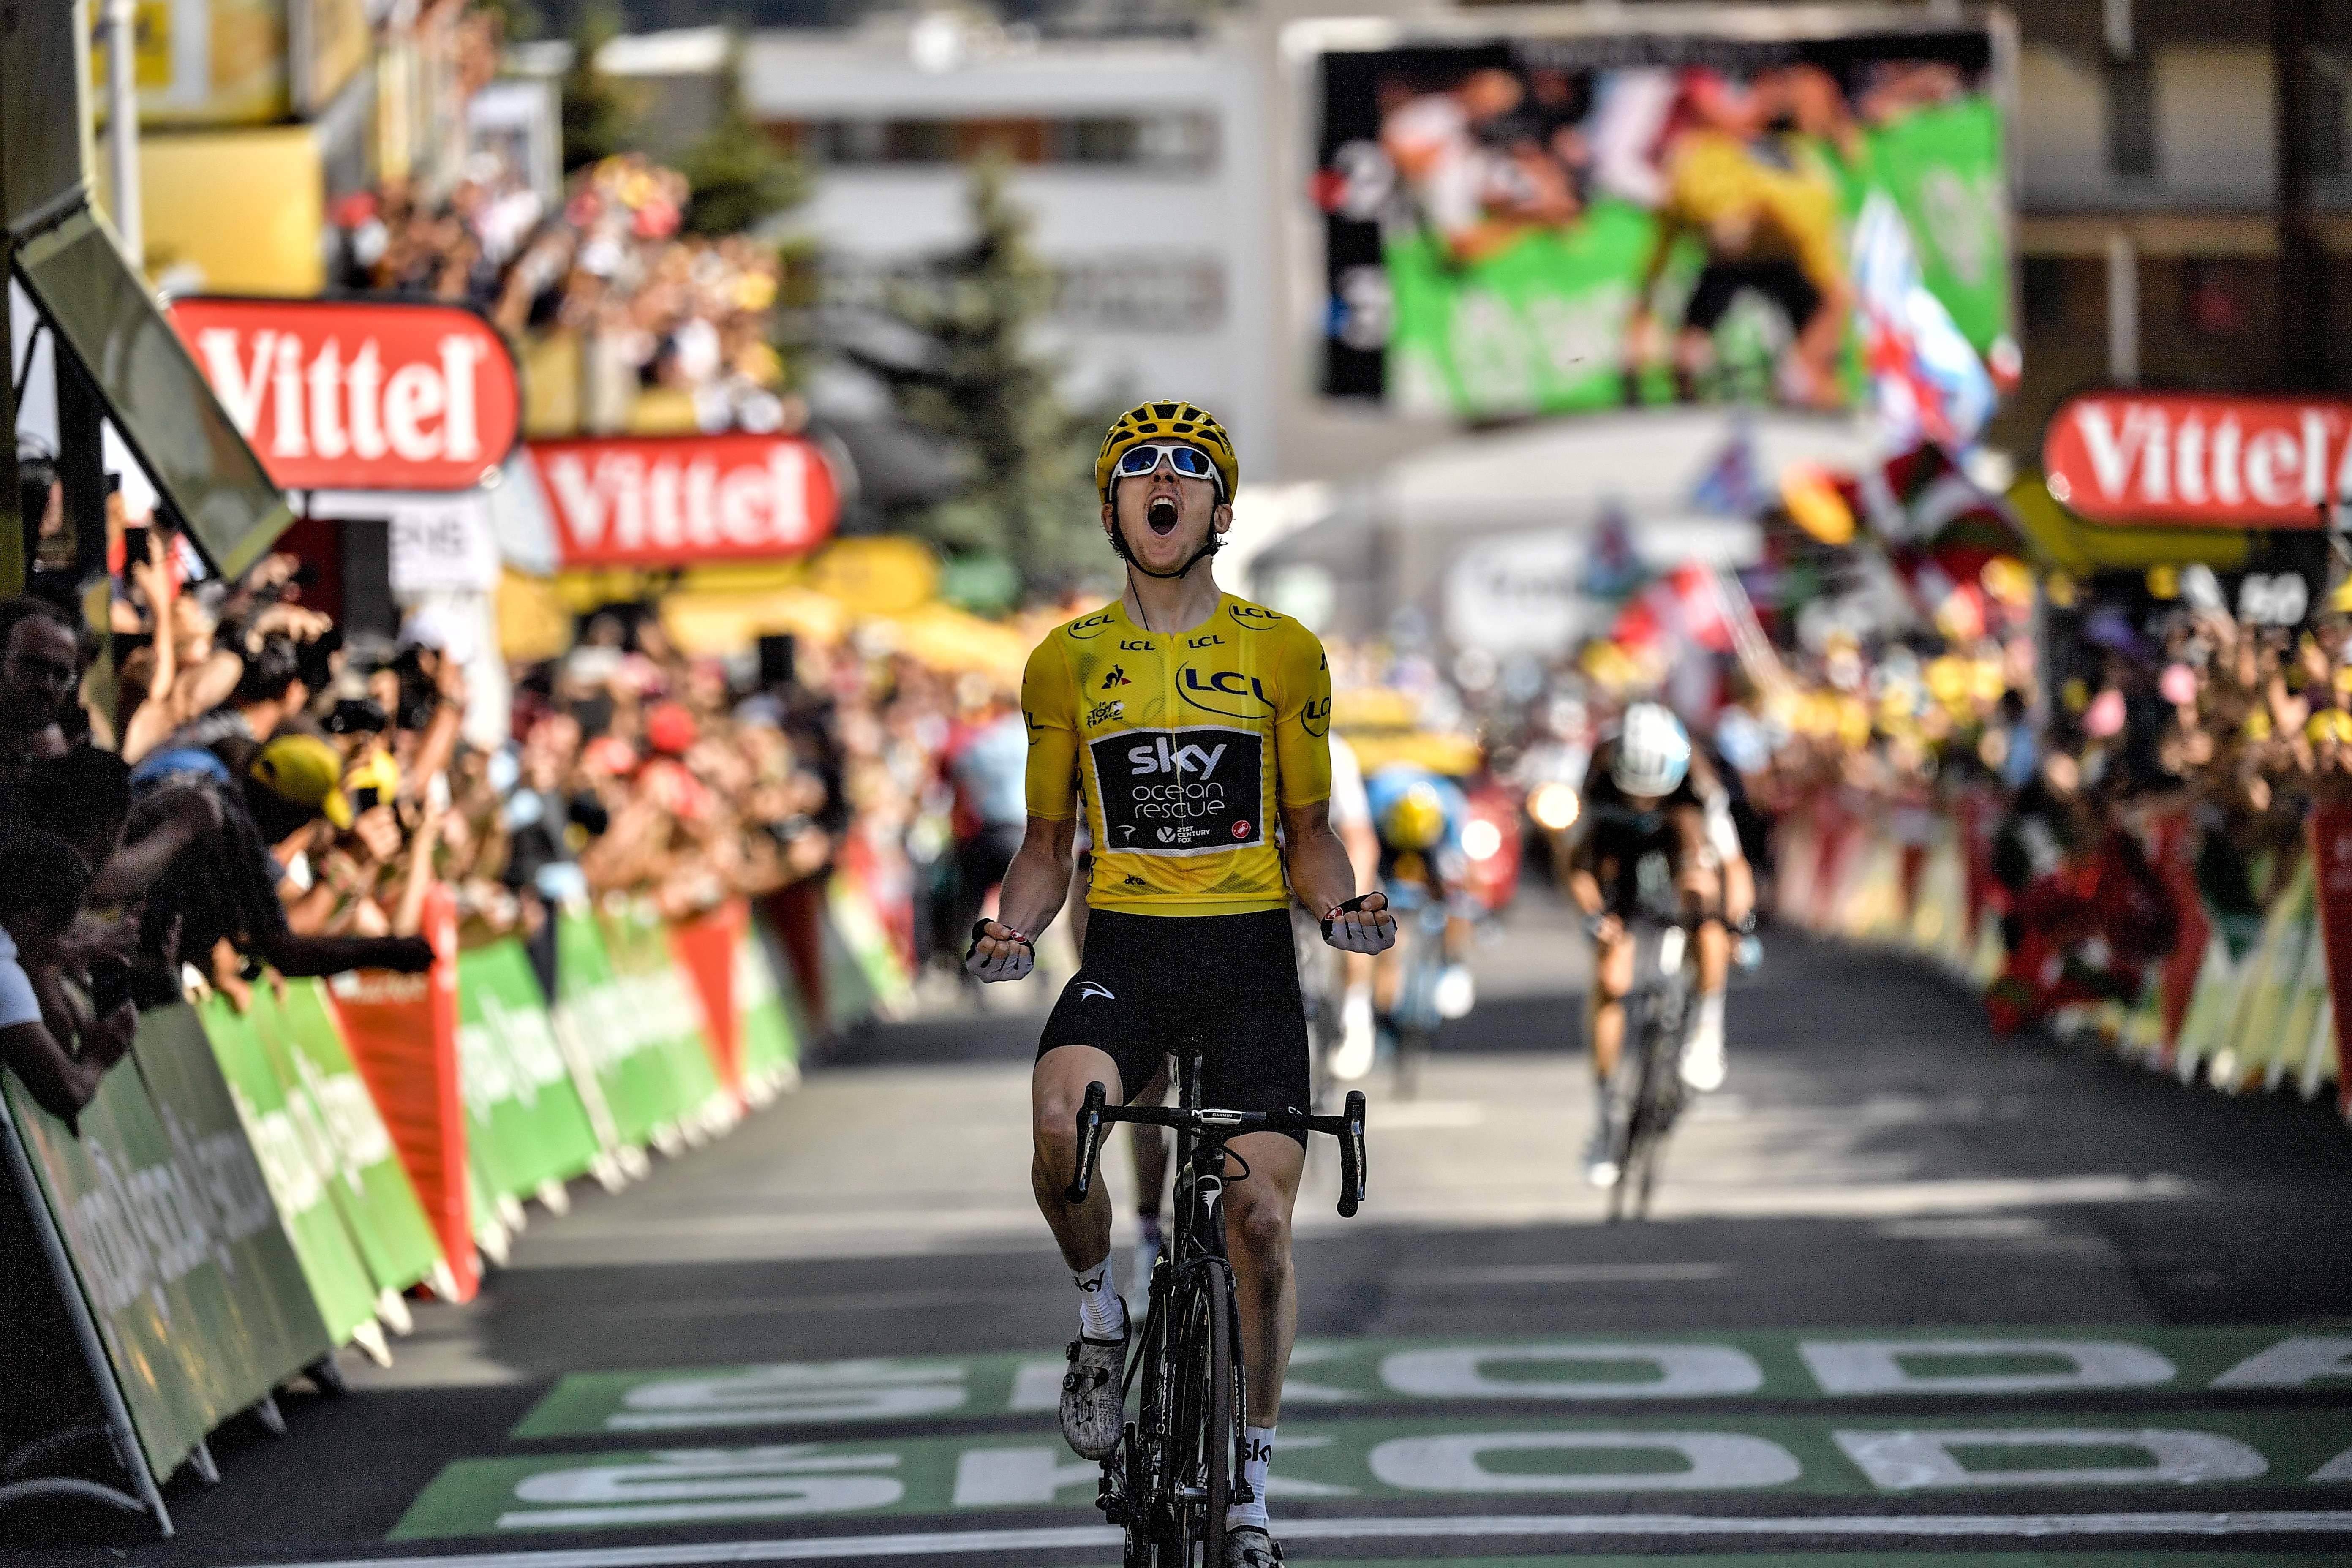 It is now six years since Geraint Thomas’s breakthrough Tour de France win